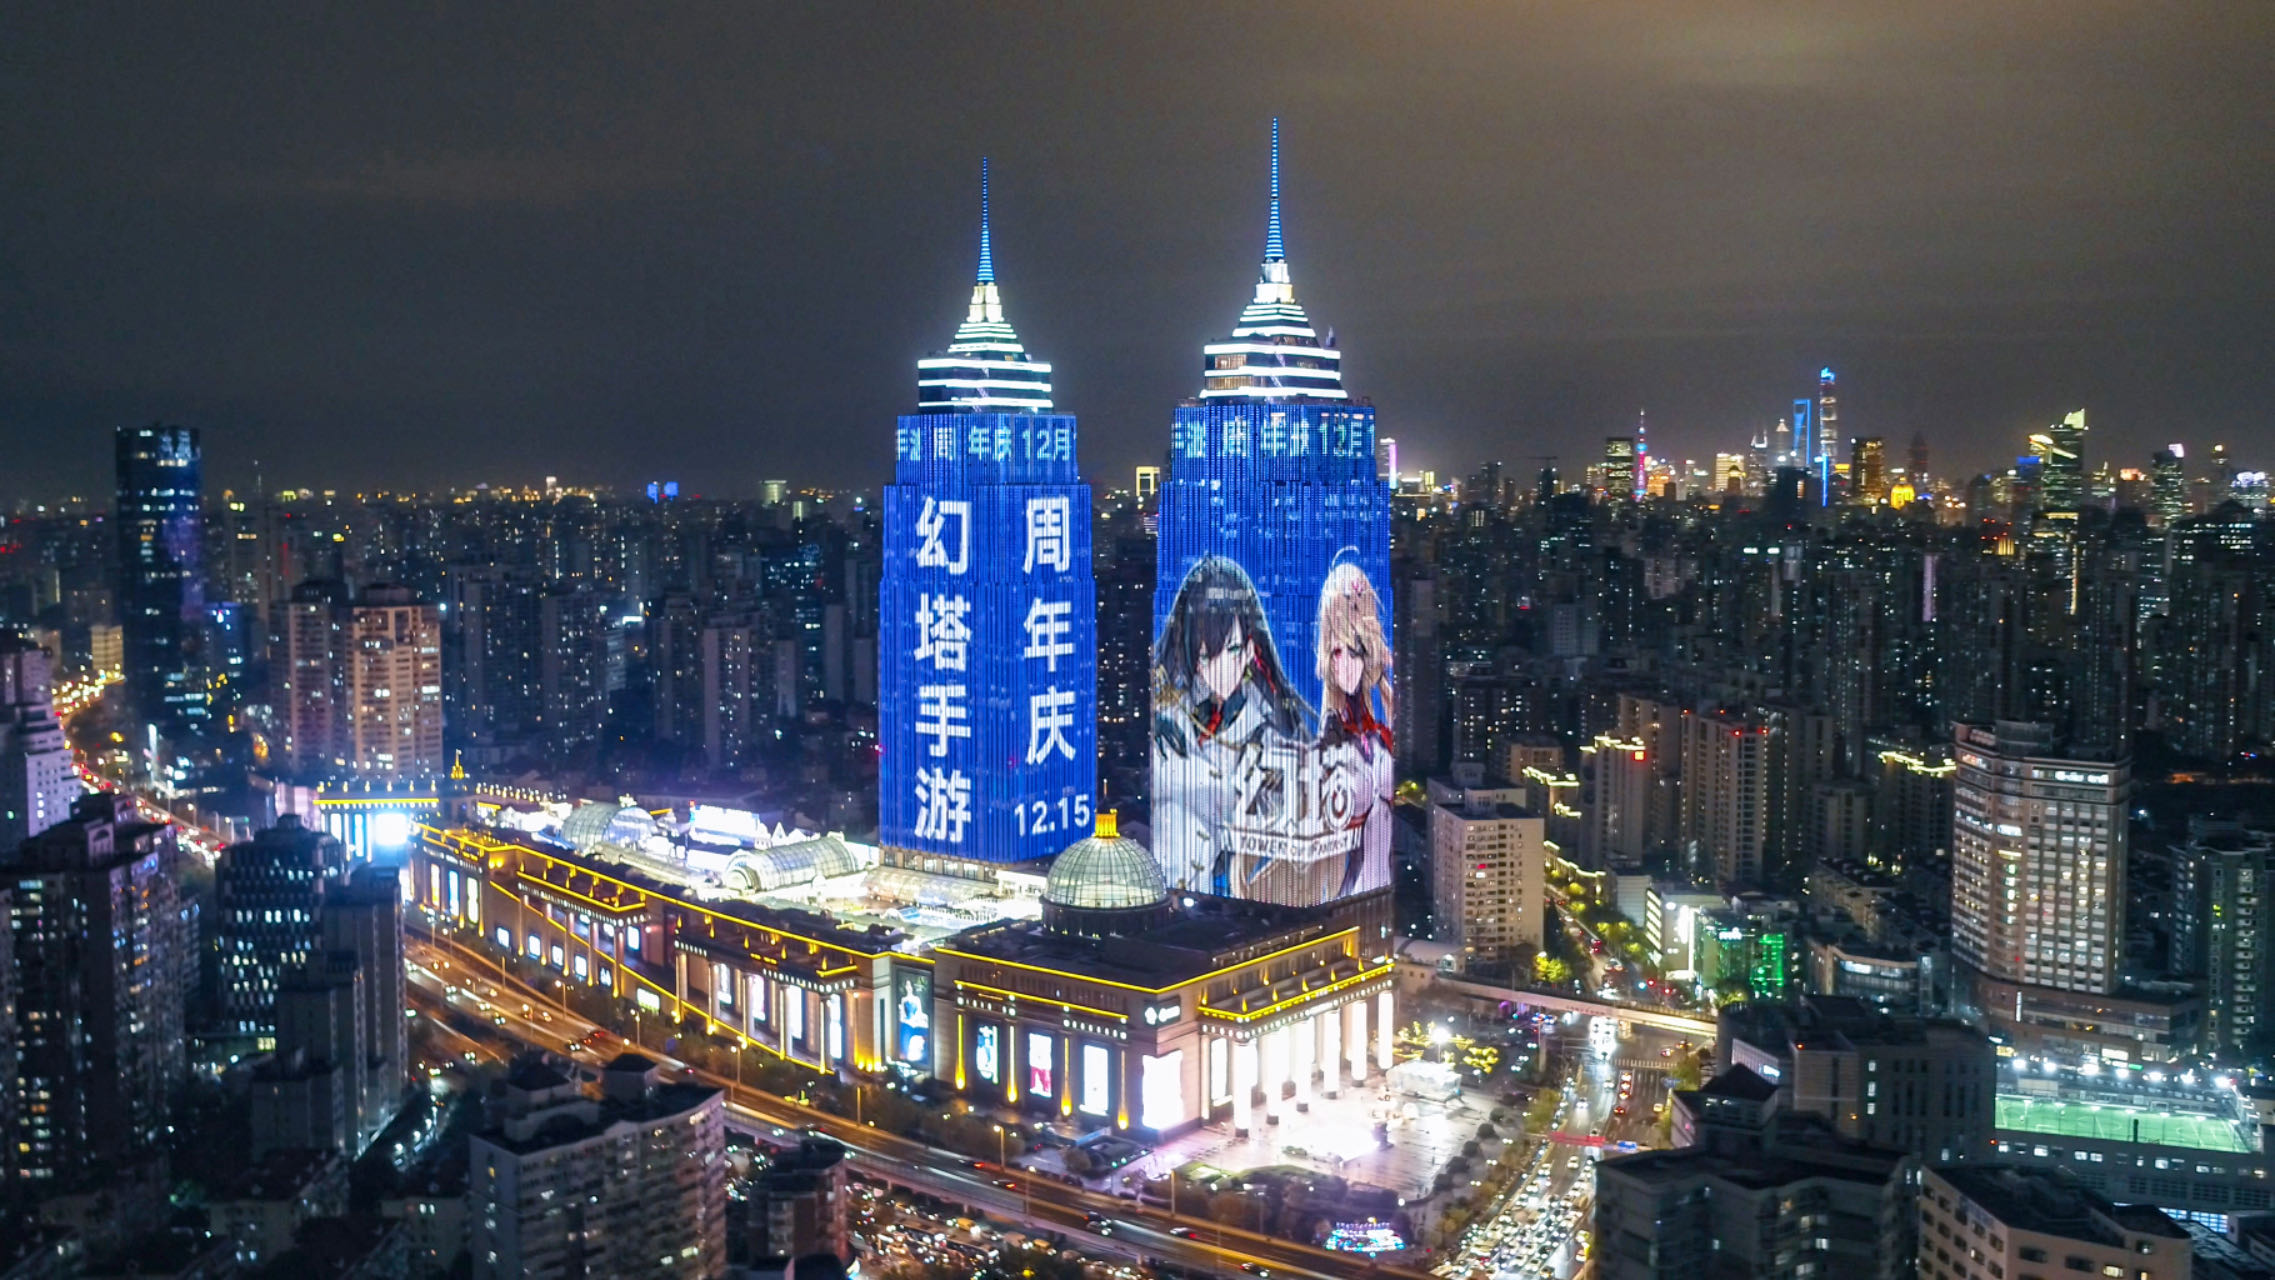 完美世界游戏——上海外滩双子塔灯光秀